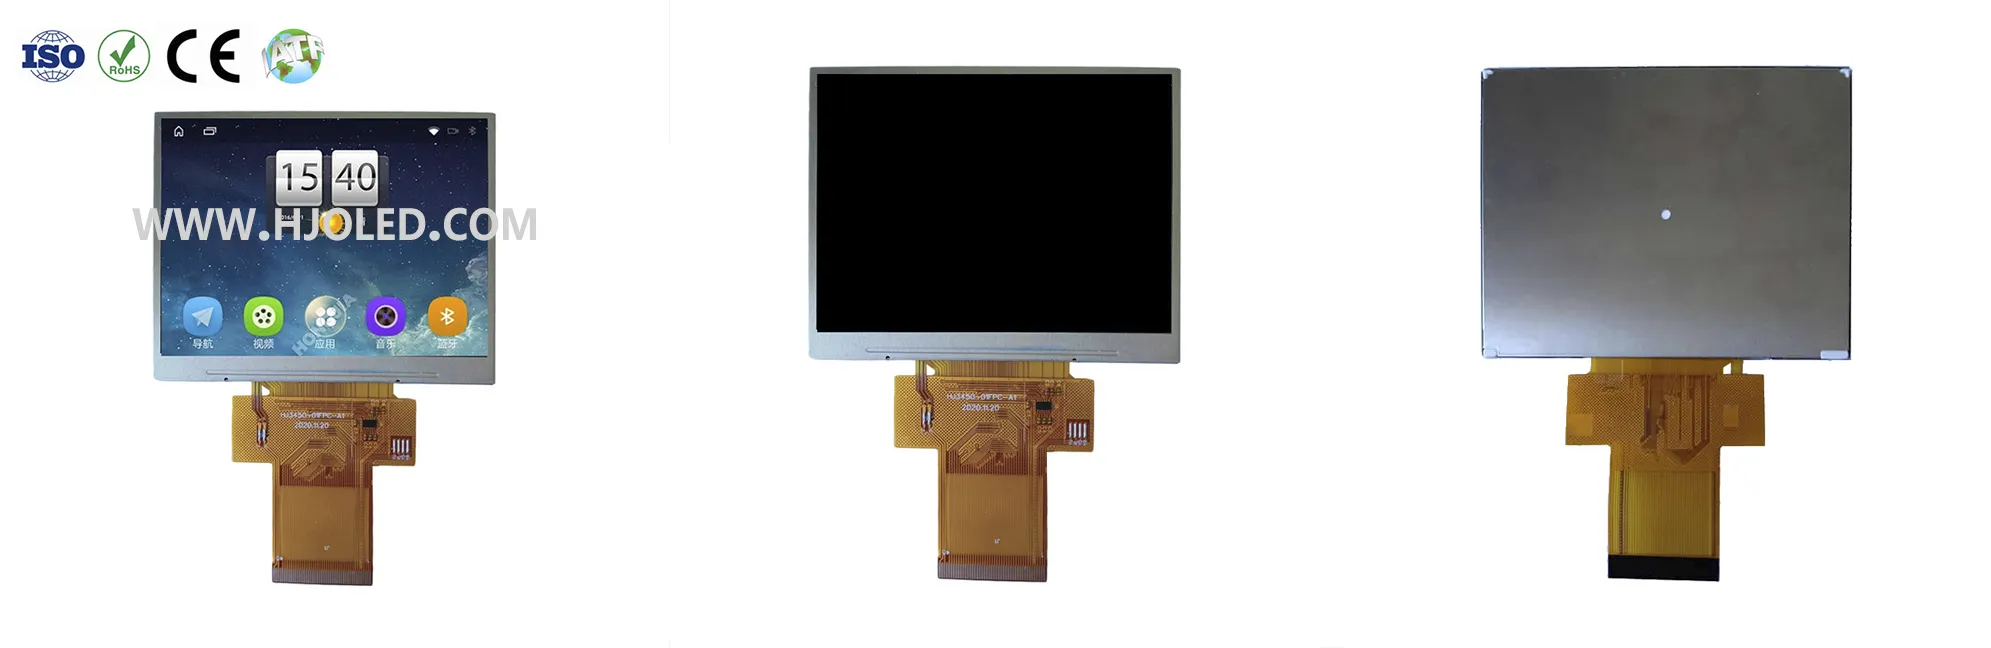 Apakah resolusi arus perdana dalam pasaran skrin LCD TFT 3.5 inci?